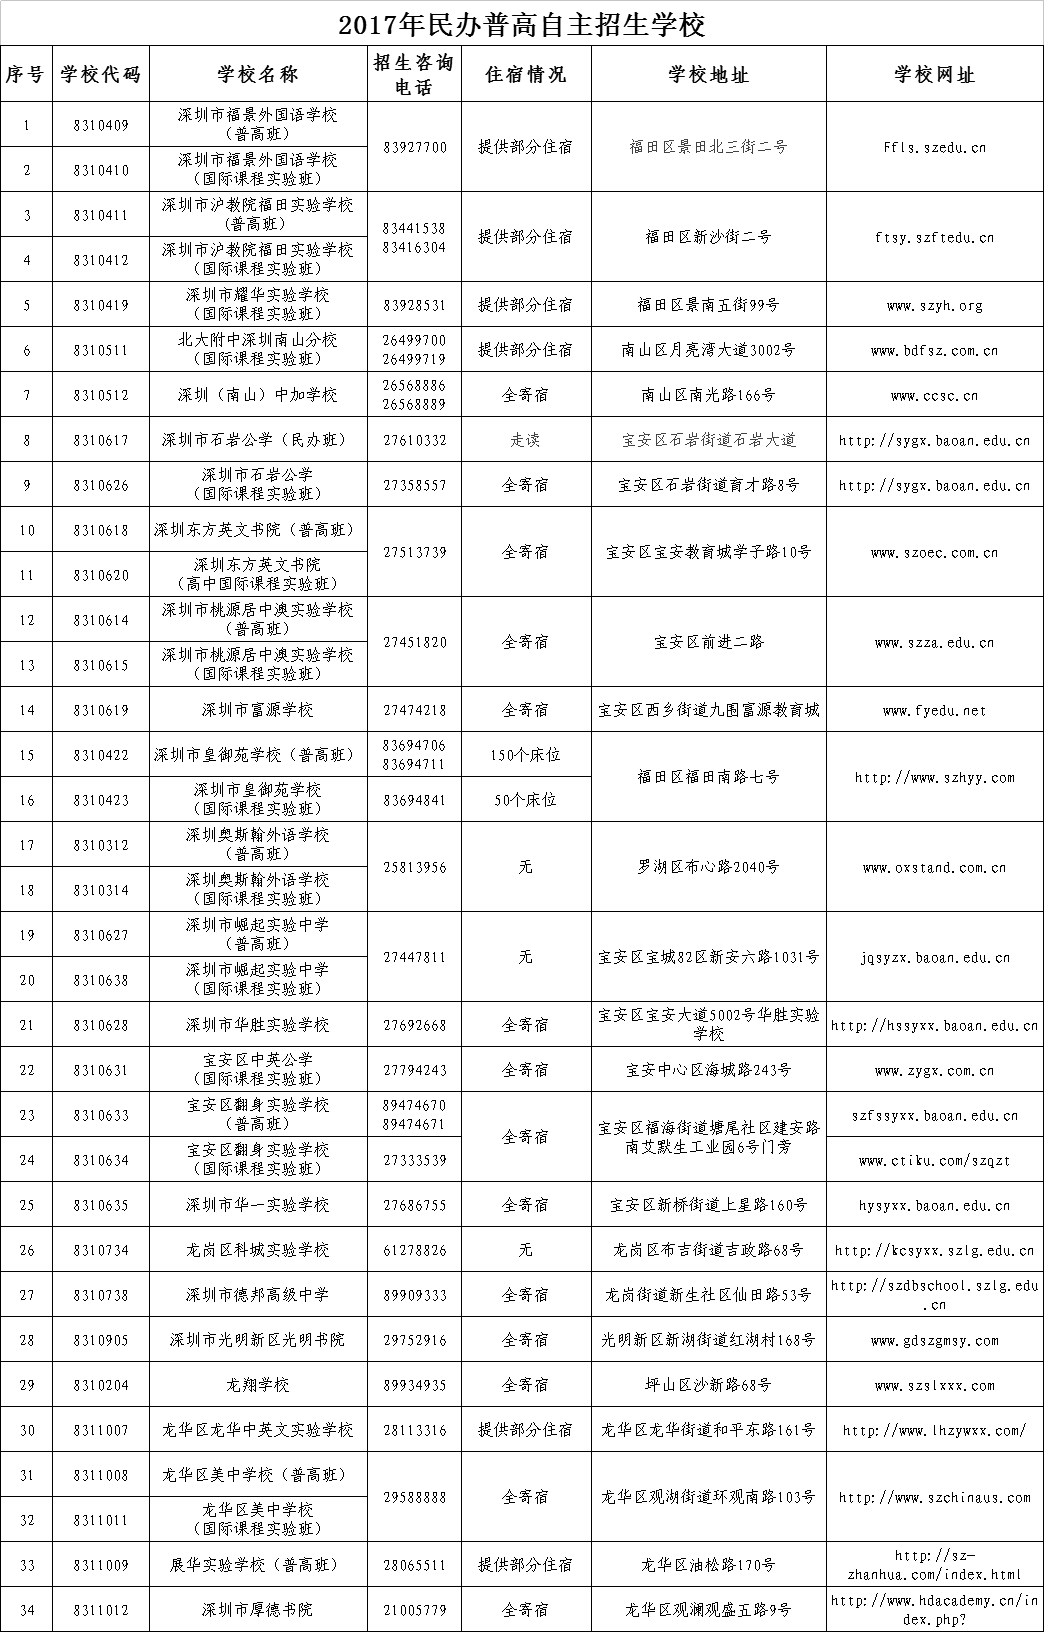 2017年民办普高自主招生学校名单公布1